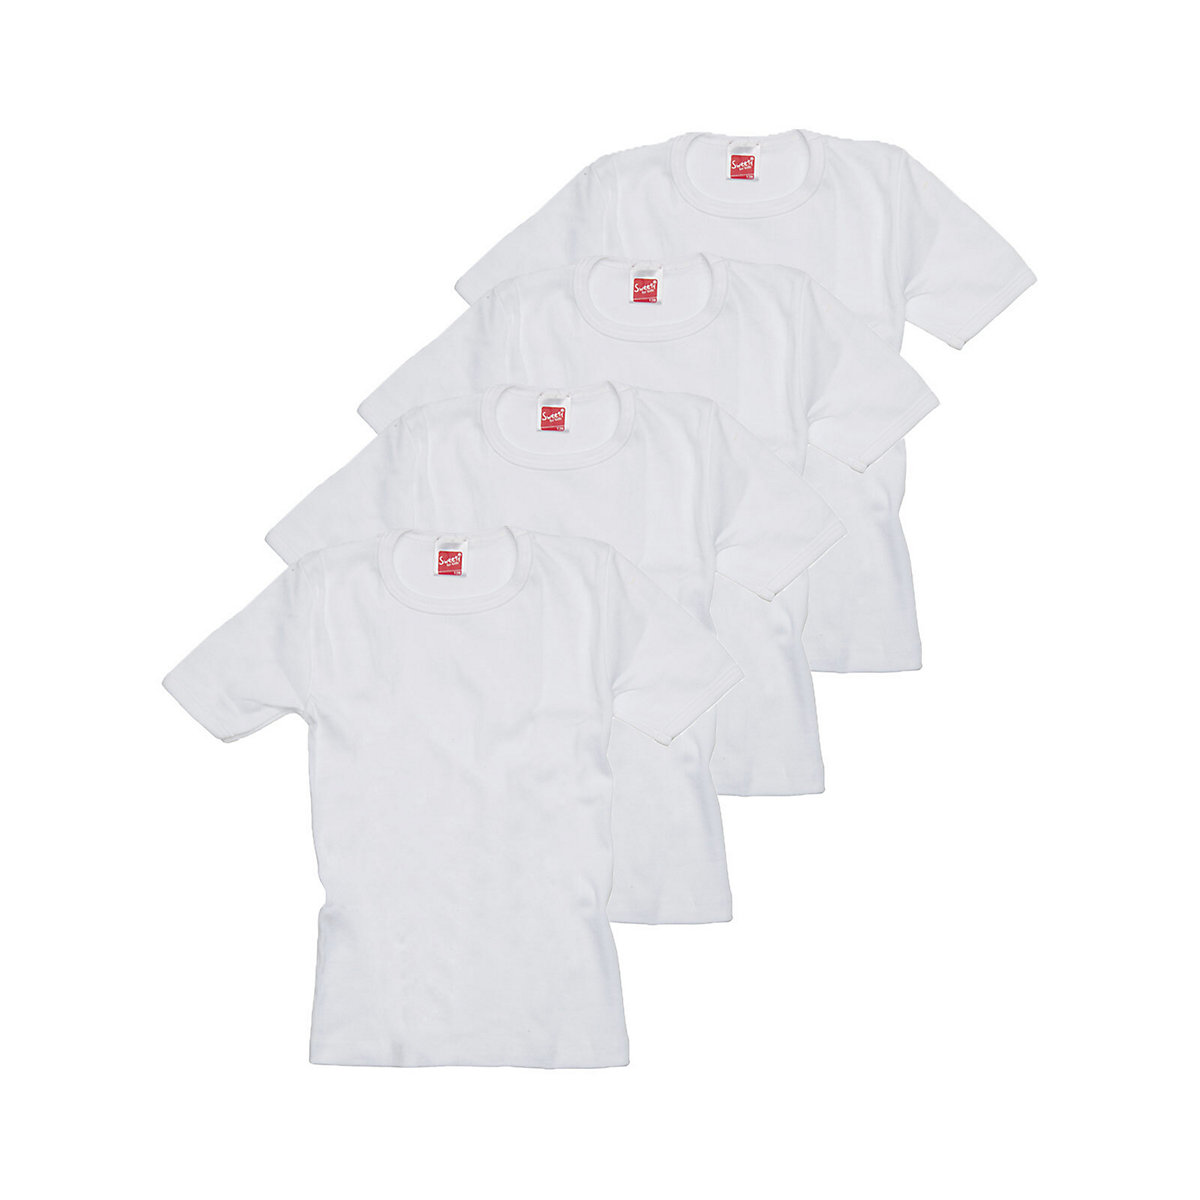 Sweety for Kids 4er Sparpack Kinder Shirt Winterwäsche Unterhemden für Kinder weiß